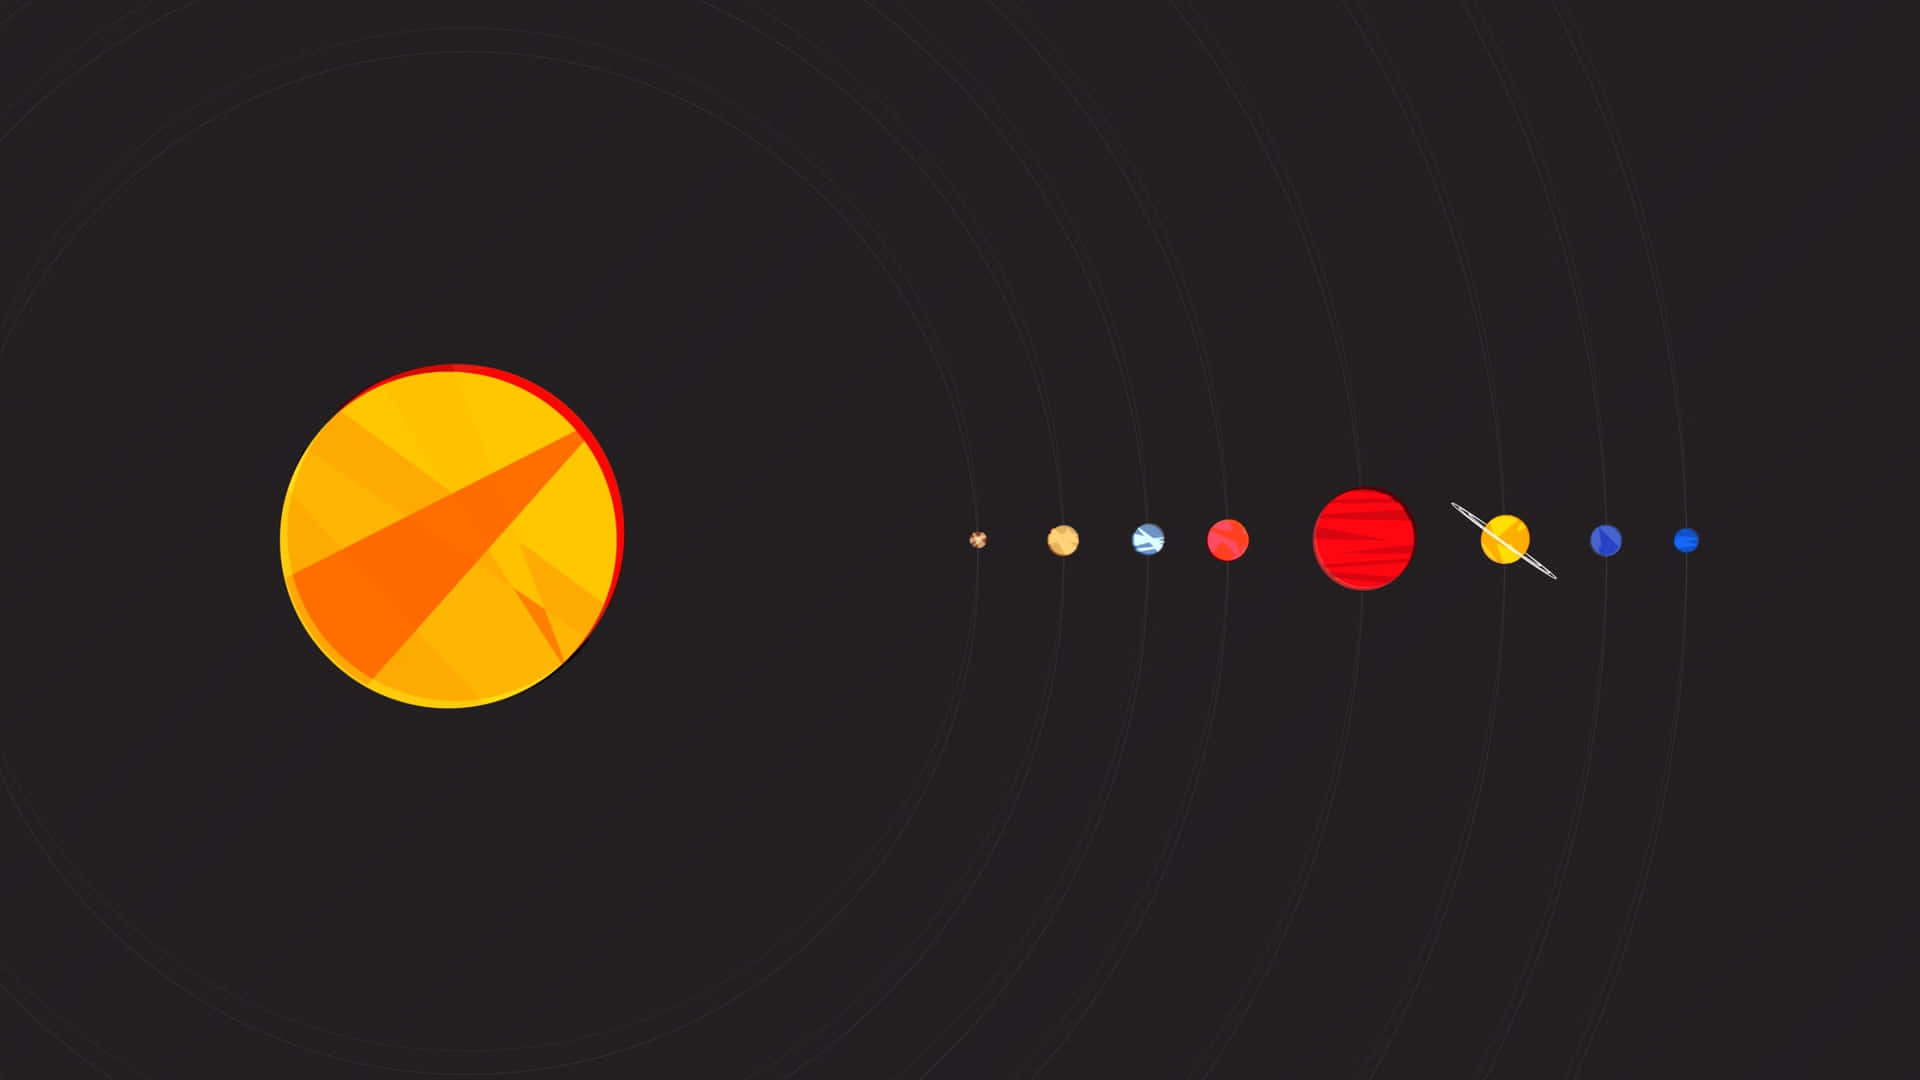 Unplaneta Con Un Sol Y Otros Planetas. Fondo de pantalla